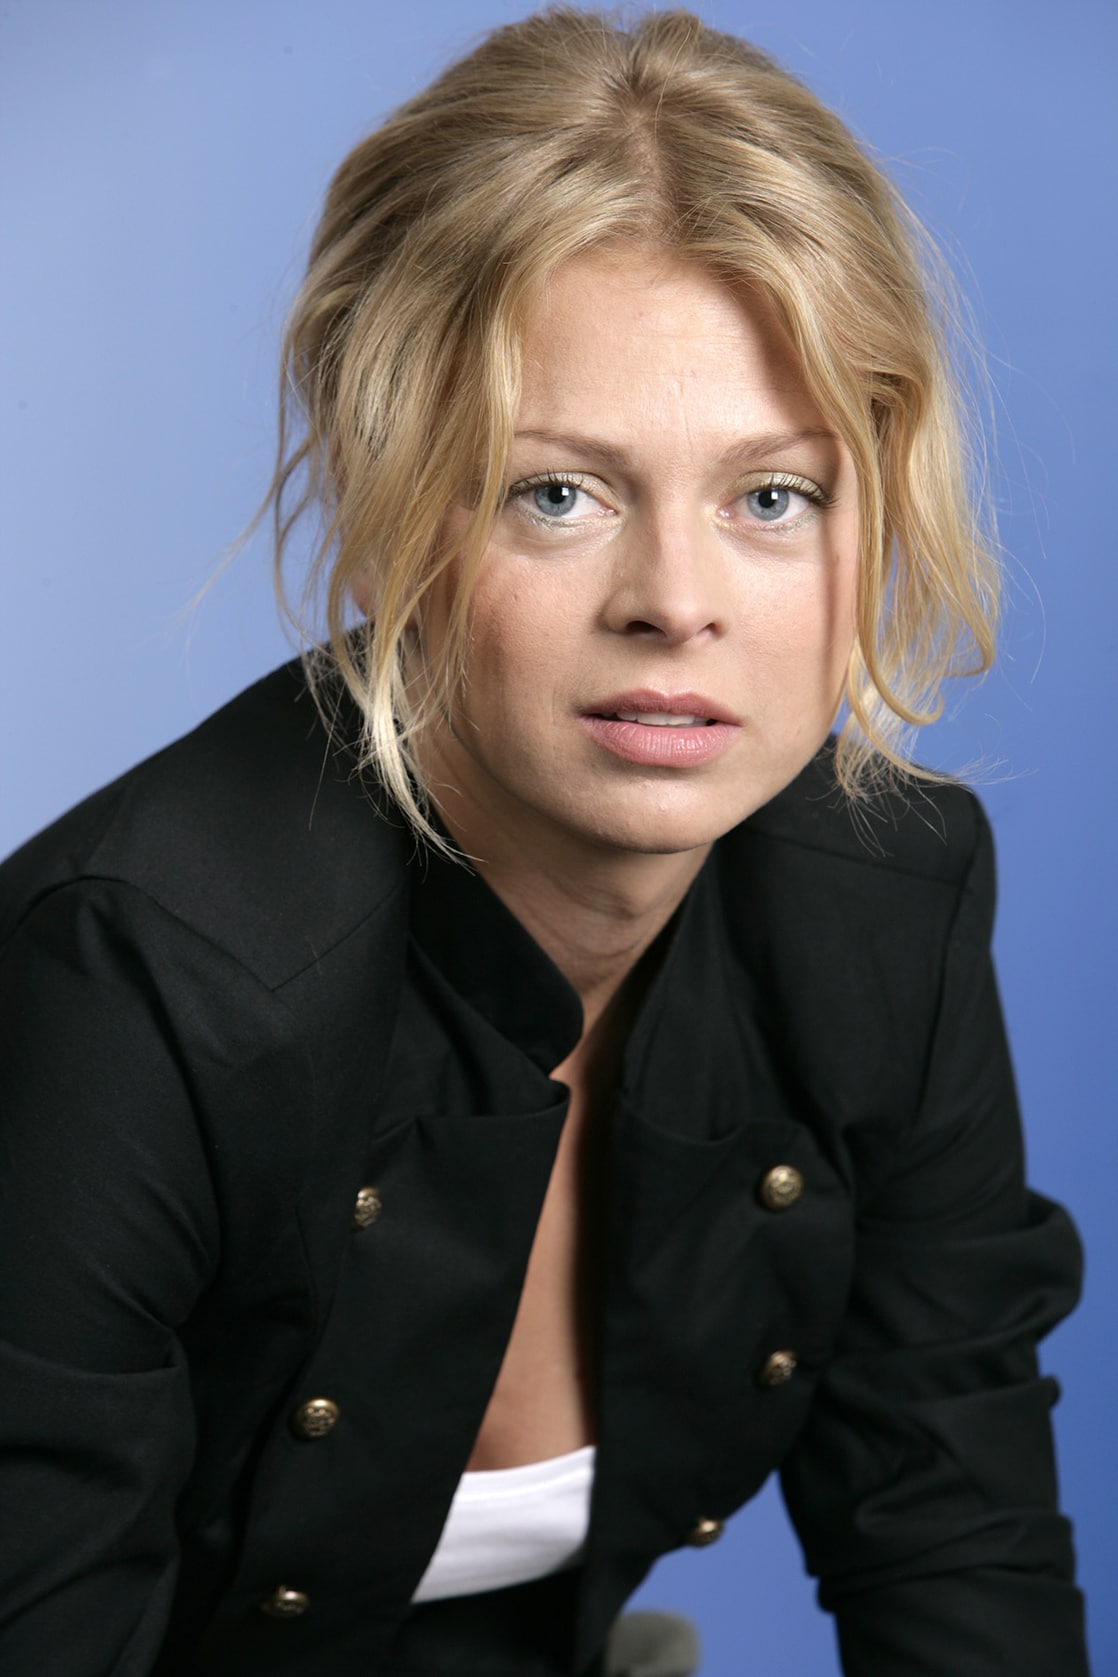 Isabell Gerschke